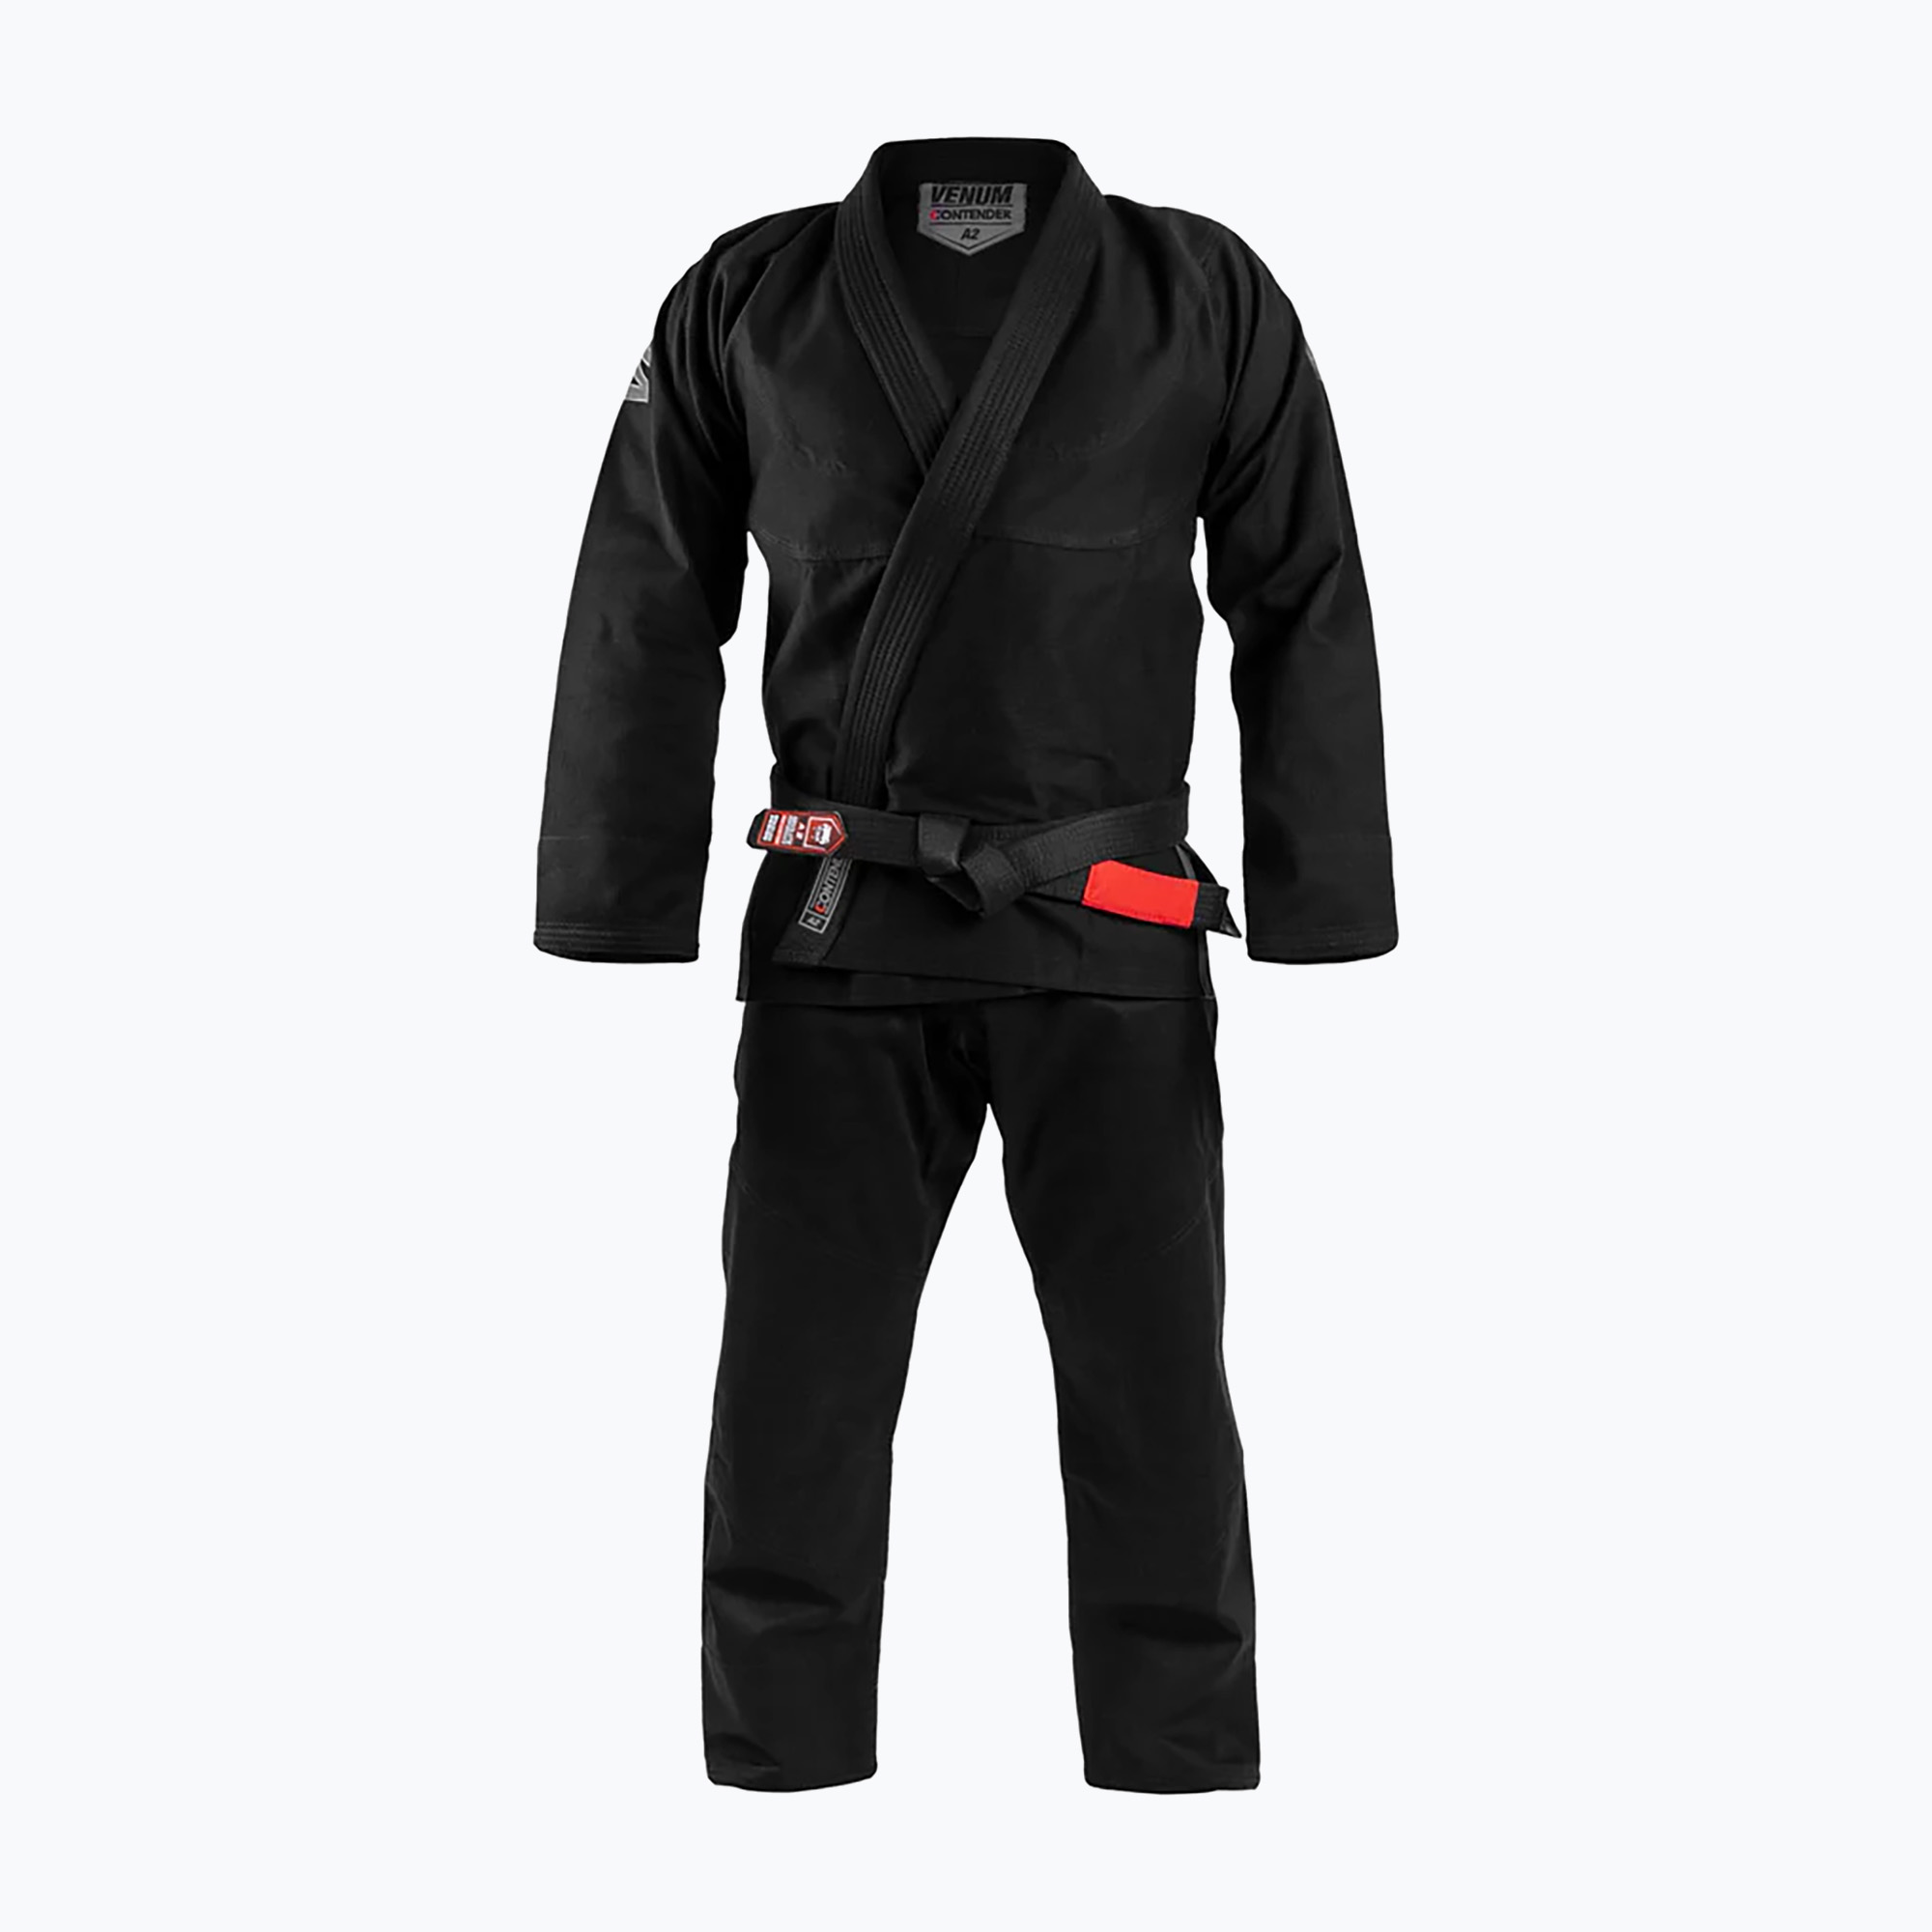 Gi pentru Brazilian Jiu-Jitsu Venum Contender Evo Bjj negru VENUM-03738-001-A4